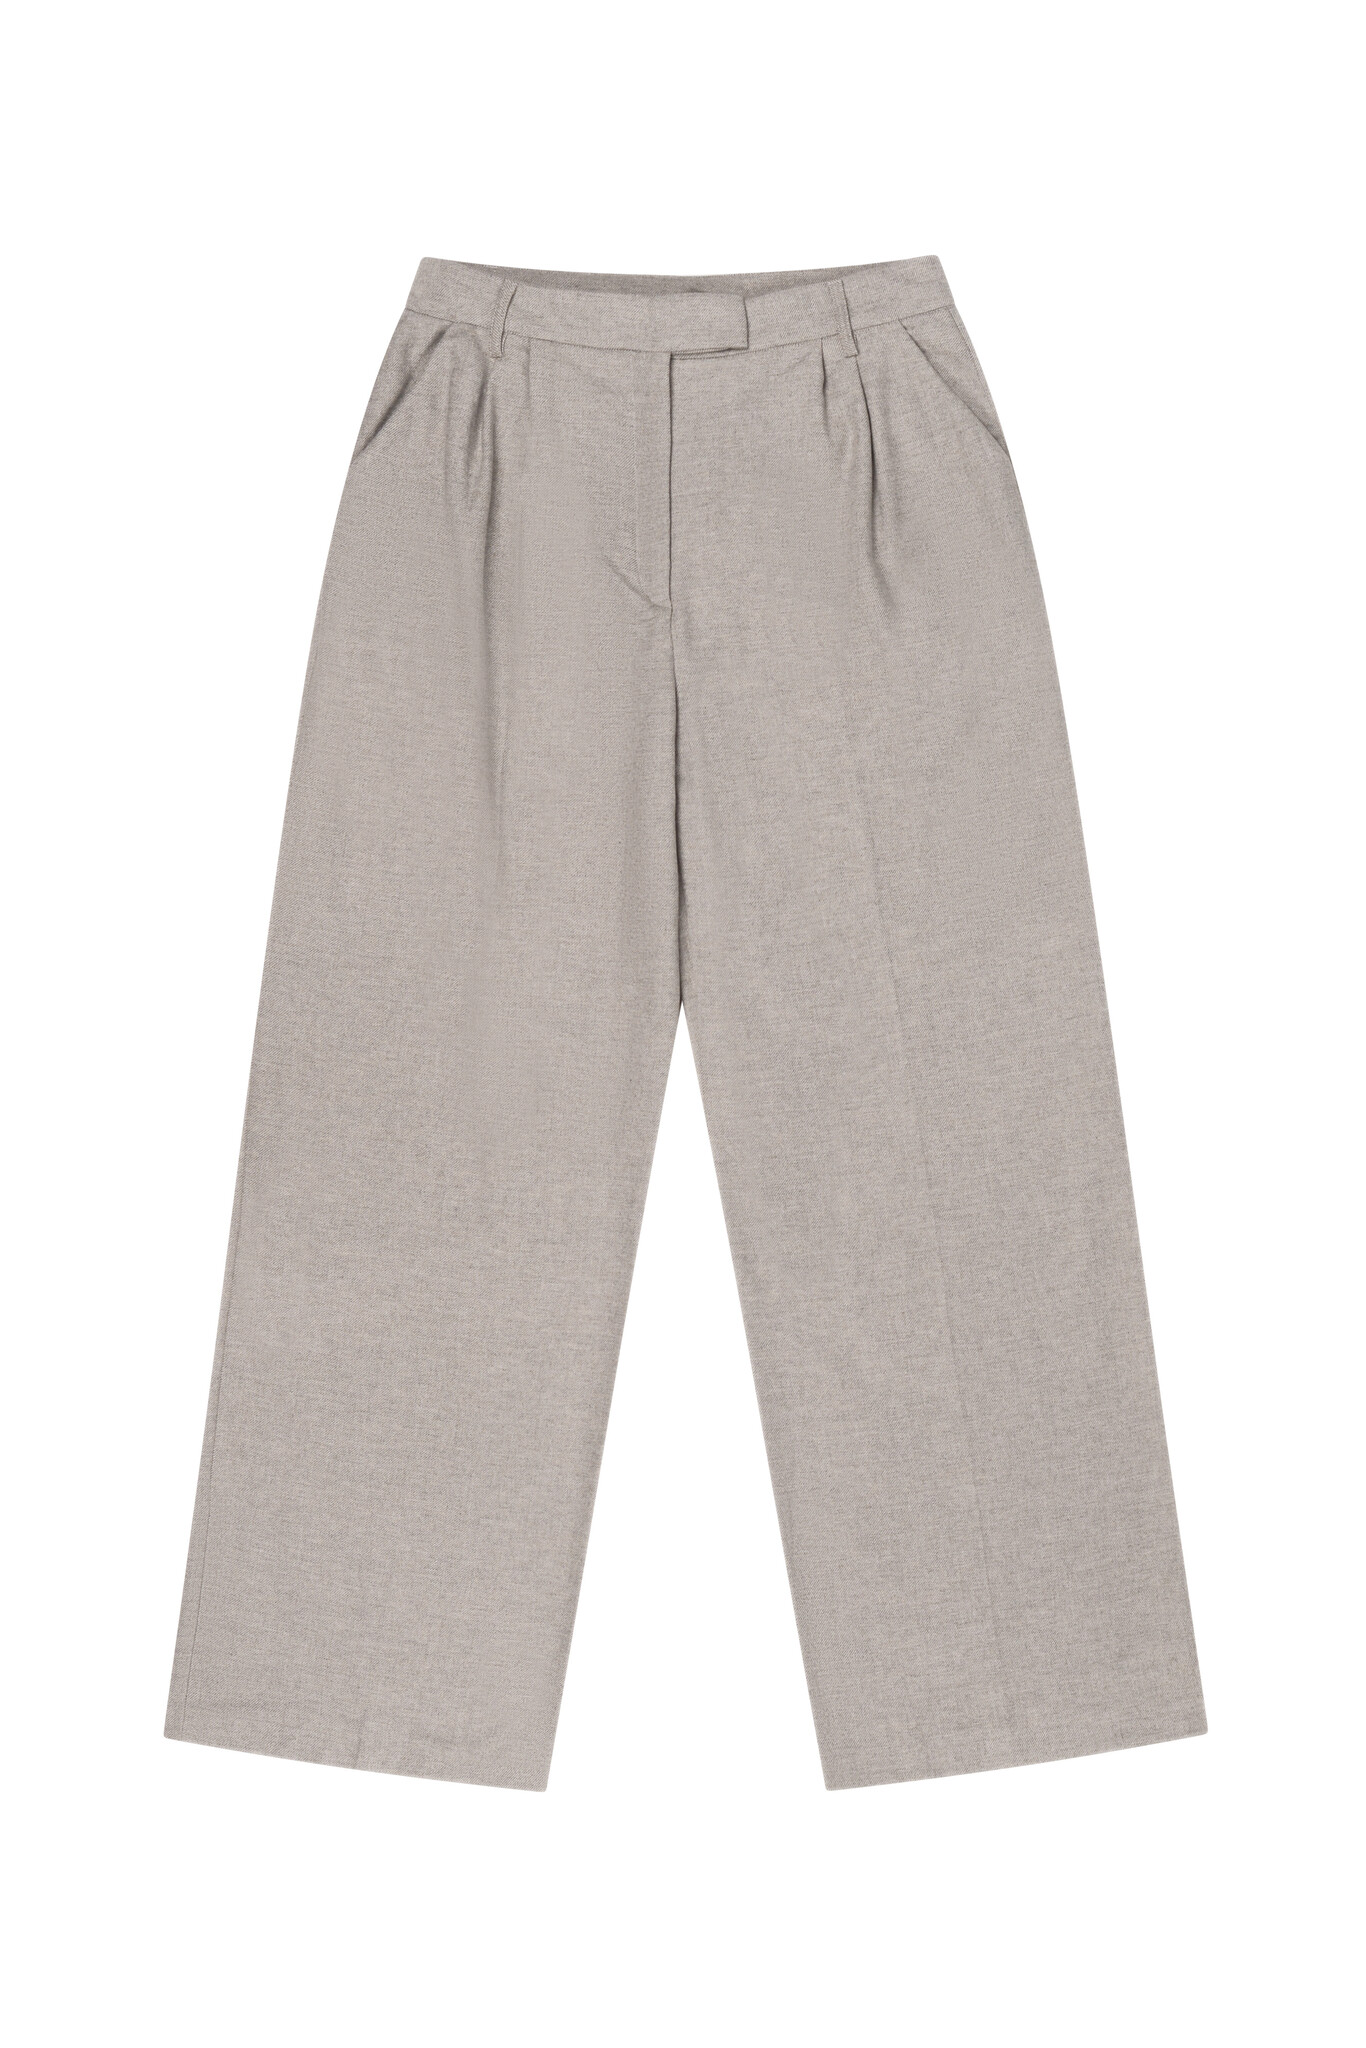 Marley Pants Wool in Grey-1